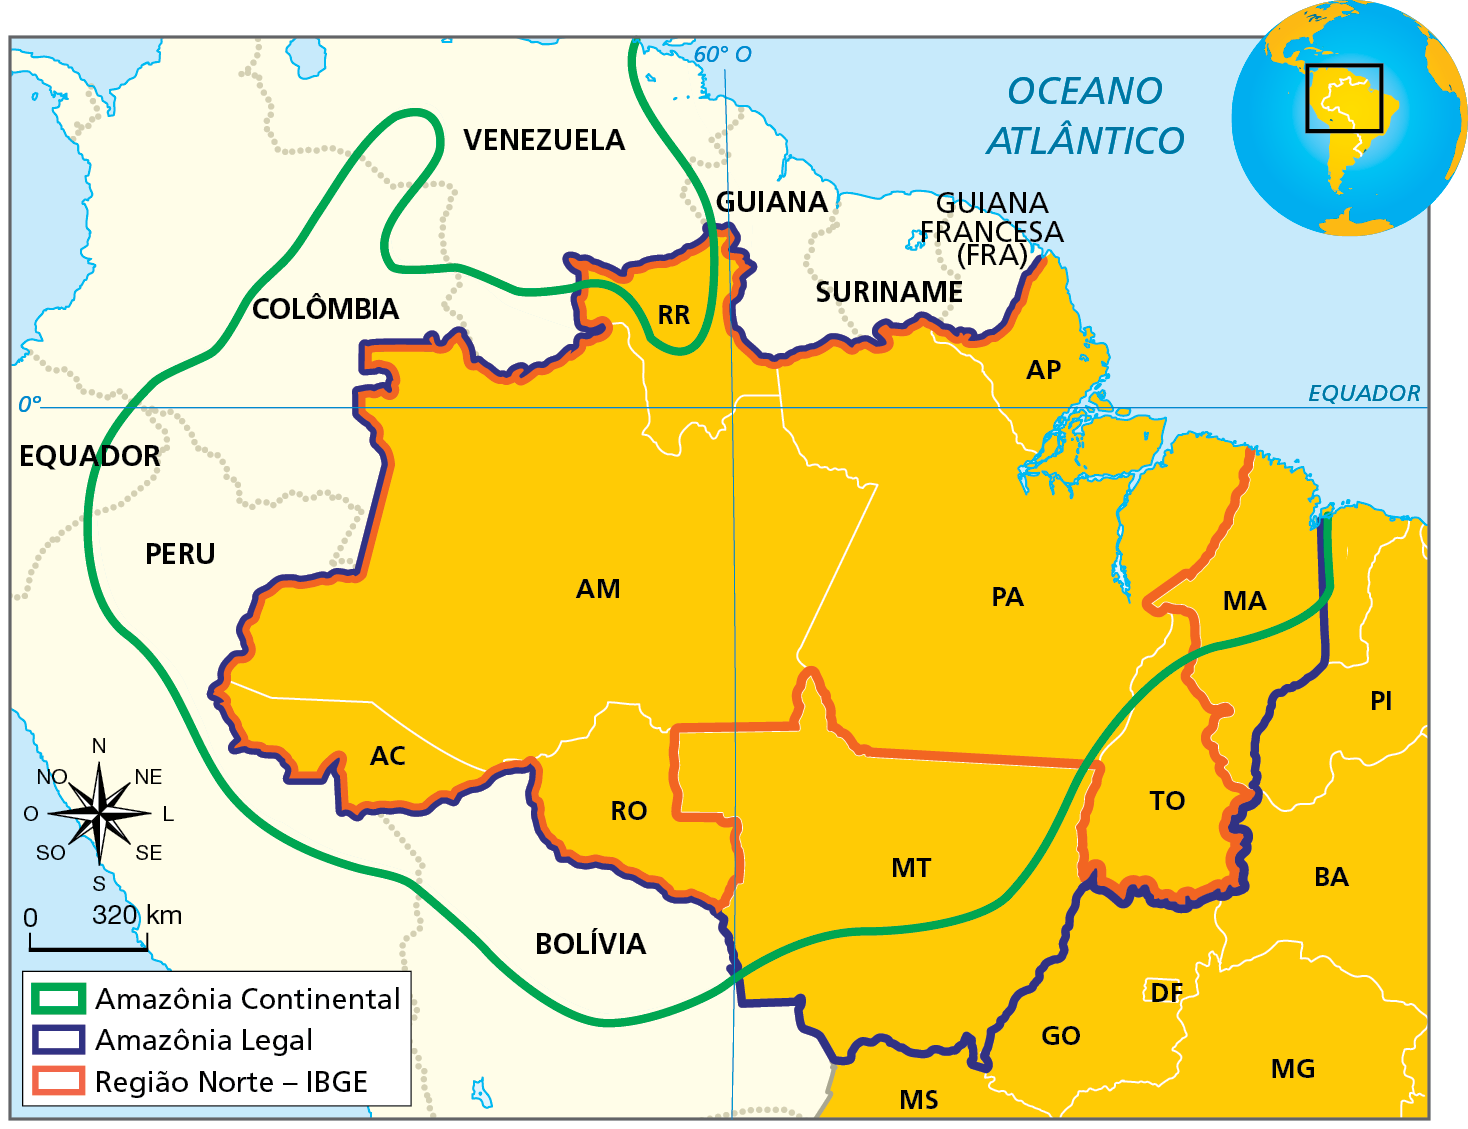 Mapa. Amazônia Continental, Amazônia Legal e Região Norte. Mapa representando a porção norte, noroeste e oeste da América do Sul e a delimitação da Amazônia Continental (linha verde), da Amazônia Legal (linha azul) e da Região Norte do Brasil (linha vermelha). Região Norte: formada pelos estados do Acre, Rondônia, Amazonas, Roraima, Pará, Amapá e Tocantins. Amazônia Legal: estende-se pelo território do Acre, Rondônia, Mato Grosso, Amazonas, Roraima, Pará, Amapá, Tocantins e parte do Maranhão. Amazônia Continental: no Brasil, abrange parte do território de Mato Grosso, Maranhão e Tocantins, os estados de Pará, Amapá, Rondônia, Acre, Amazonas e porção sul de Roraima, estendendo-se por outros países da América do Sul: norte da Bolívia, porção leste e norte do Peru, porção leste do Equador, porção sudoeste e sul da Colômbia, porção sul e leste da Venezuela, e Guiana, Suriname e Guiana Francesa. Abaixo, rosa dos ventos com o norte orientado para cima e escala 0 para 320 quilômetros.